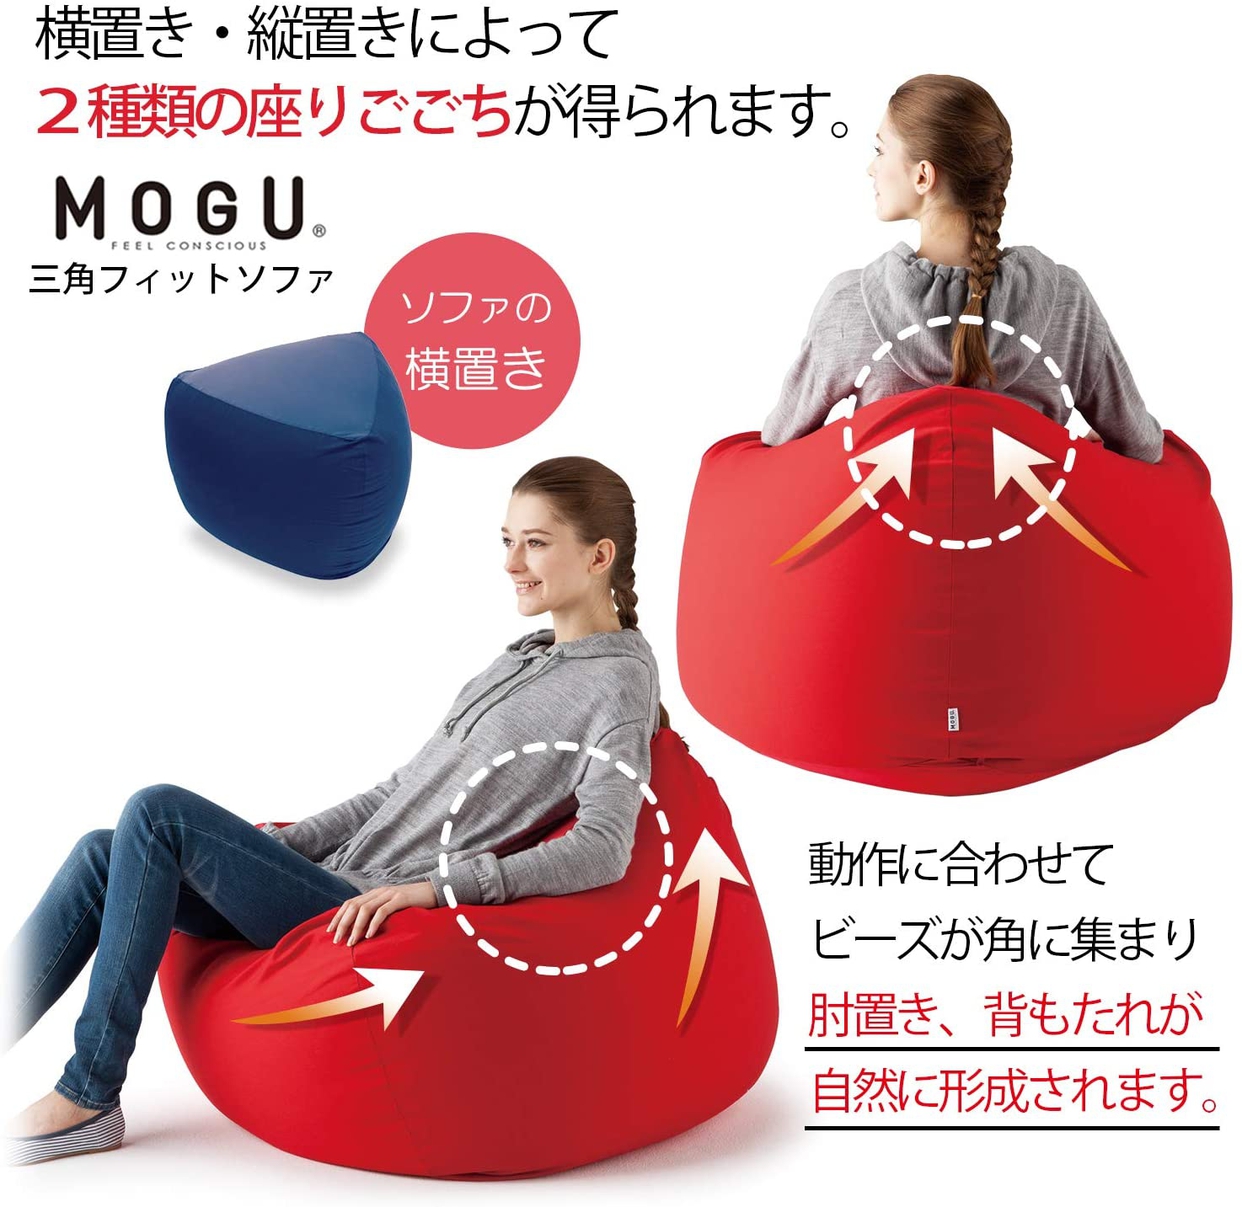 MOGU(モグ) 三角フィットソファの商品画像3 